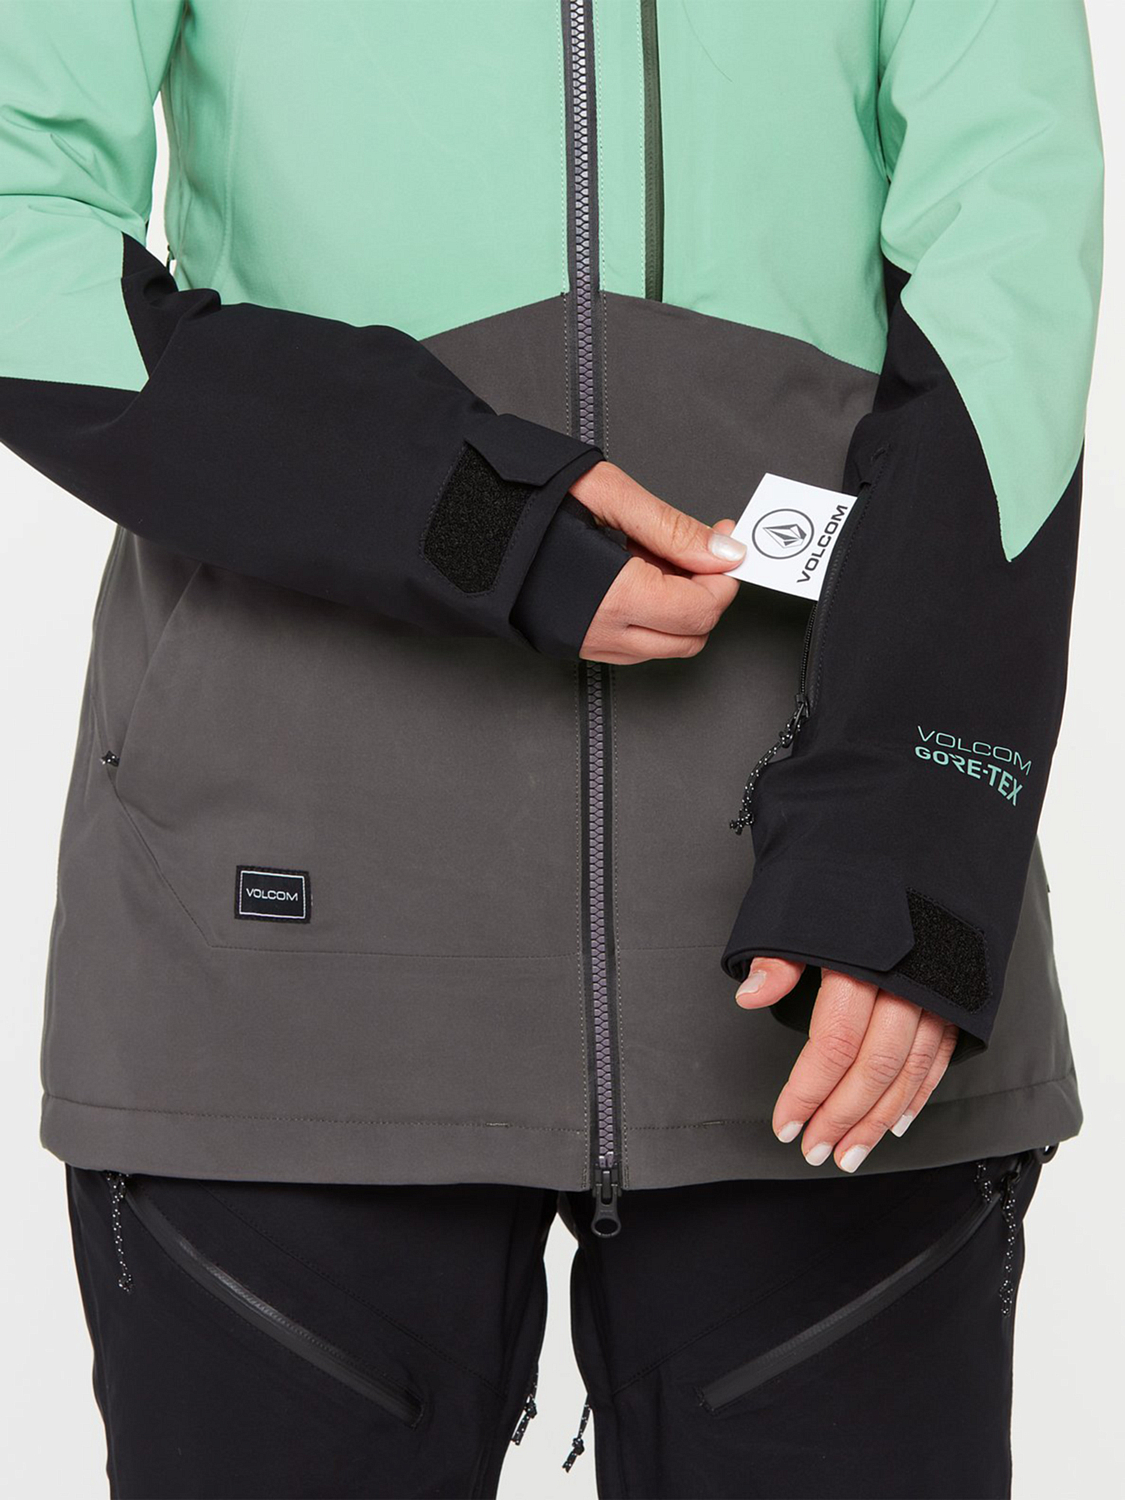 Куртка сноубордическая Volcom 3D Stretch Gore Jacket Mint